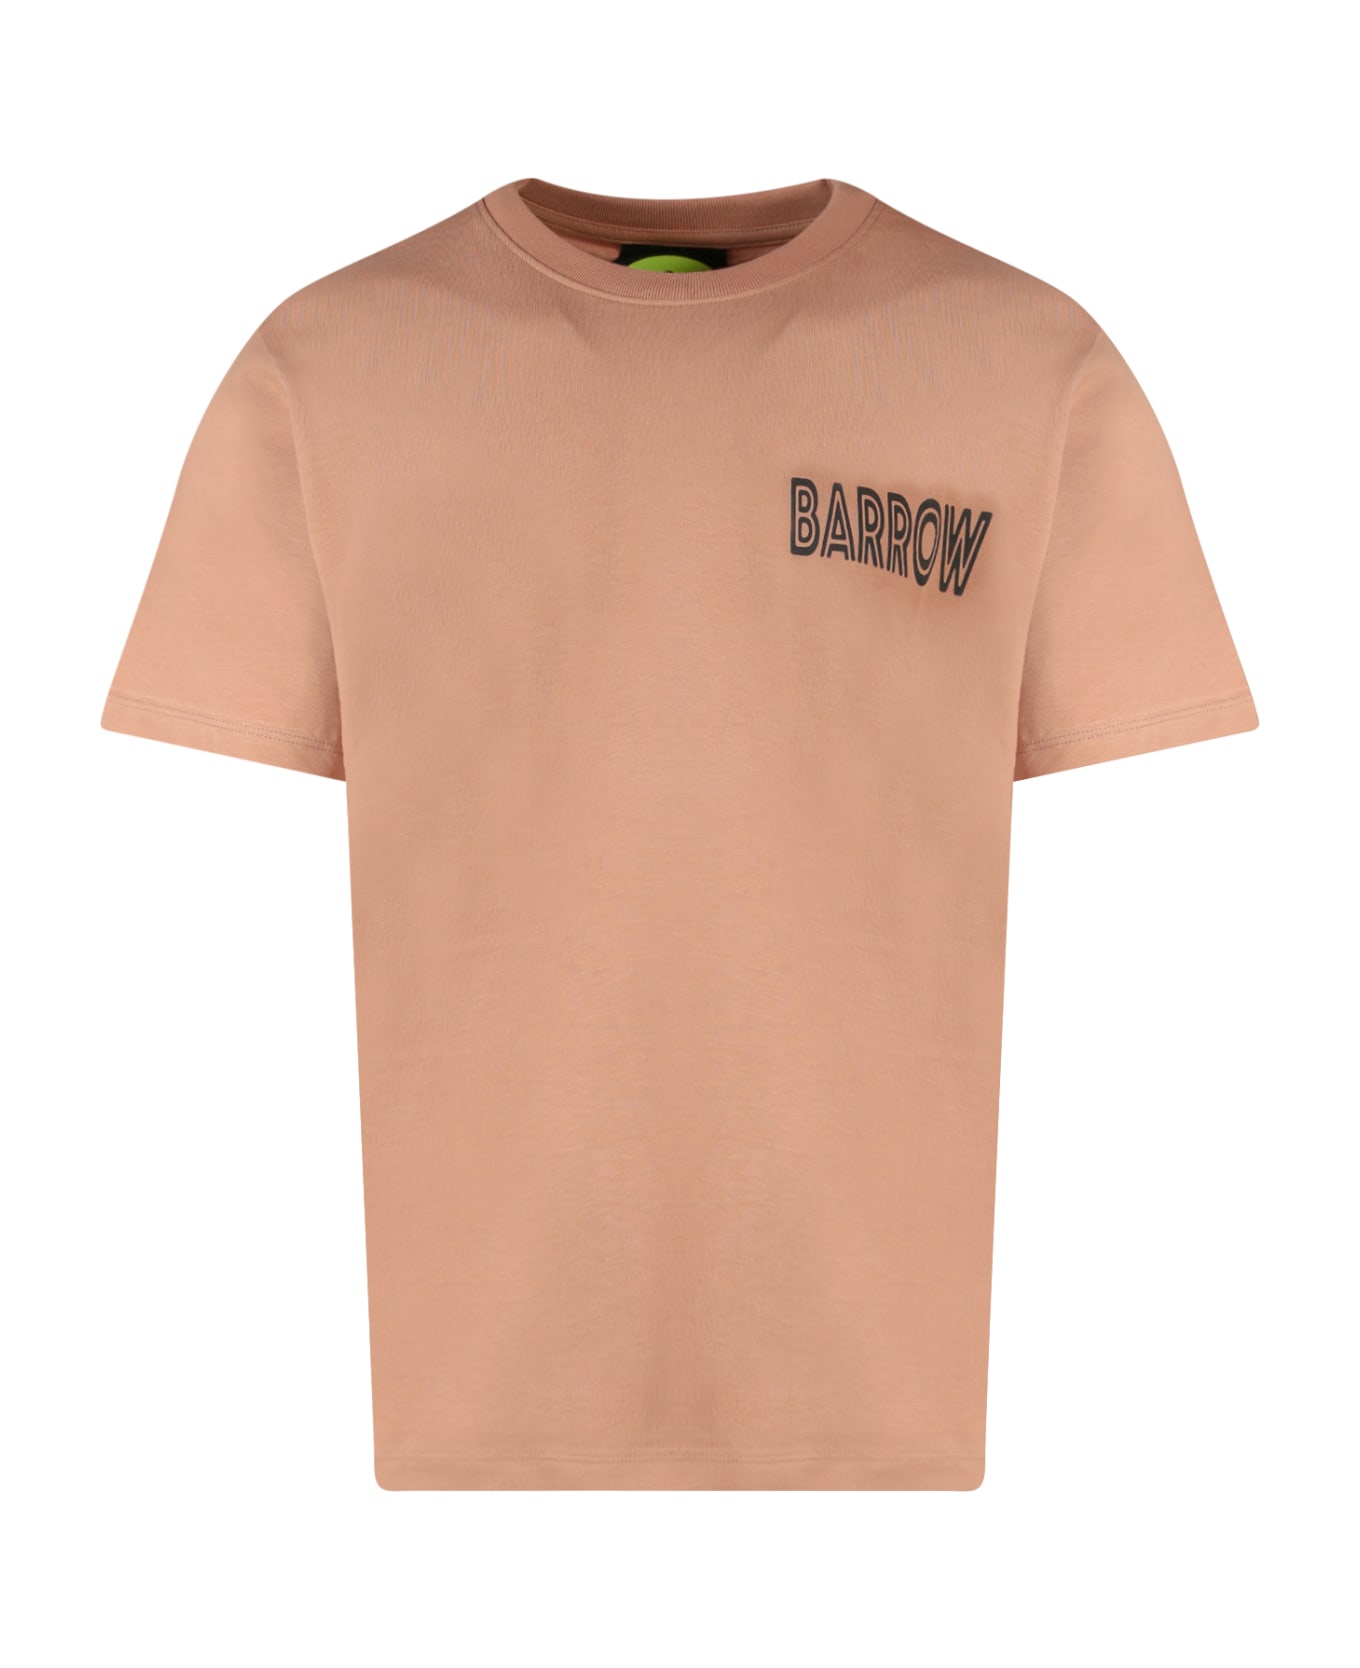 Barrow T-shirt - Burnt Sand